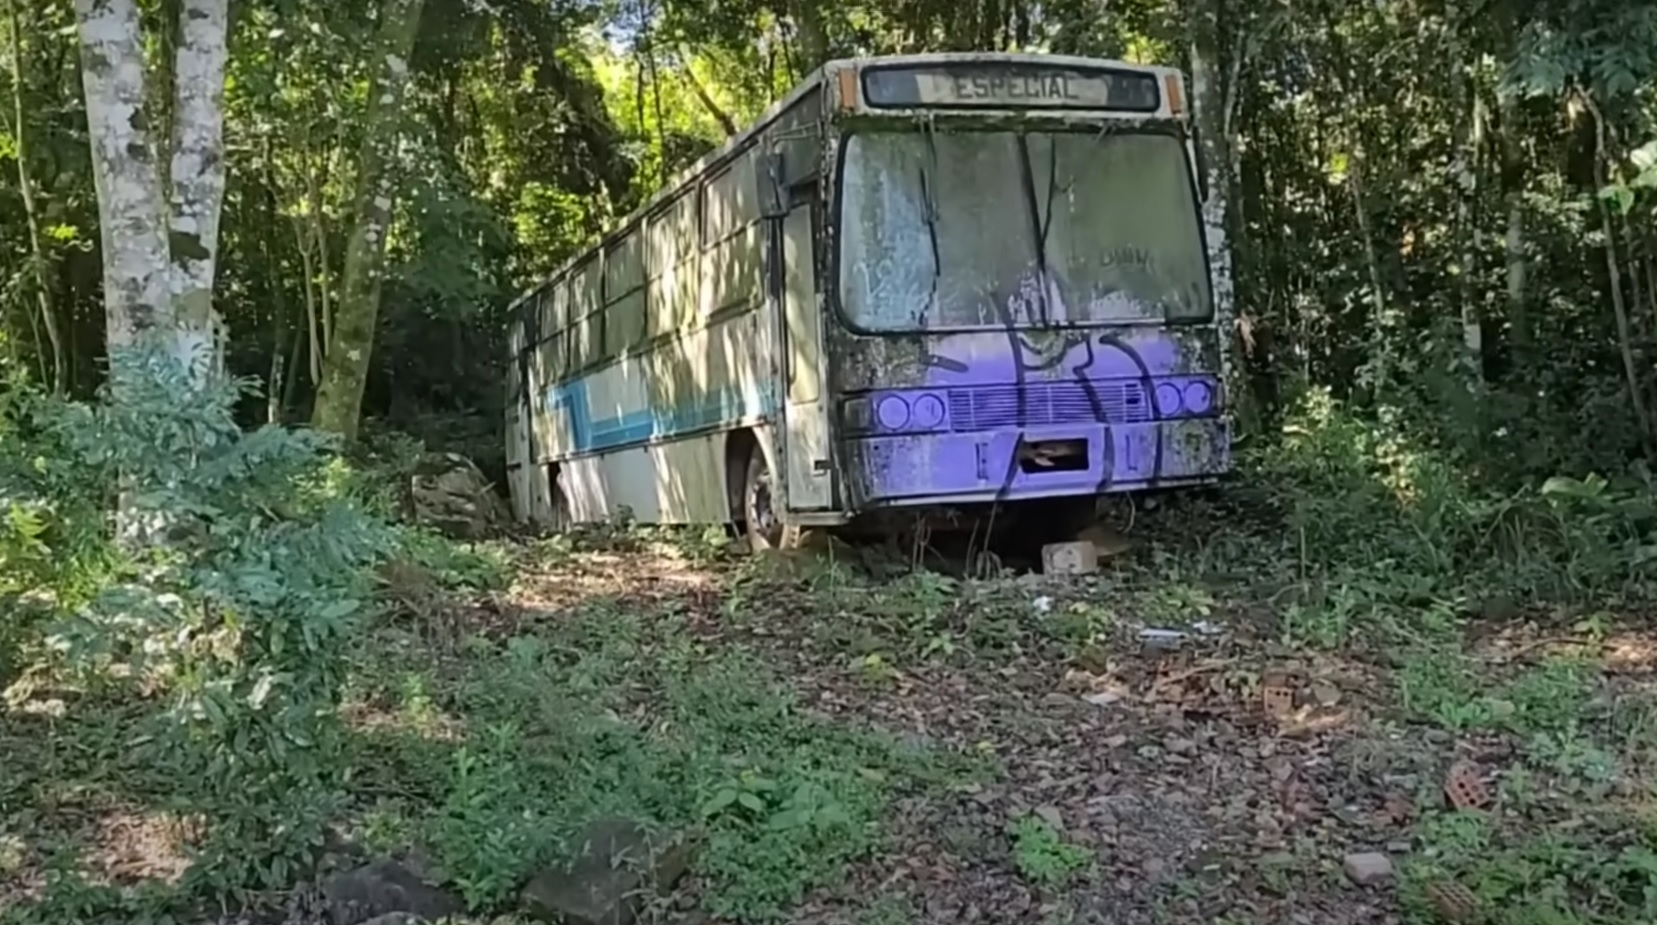 Ônibus de 1983 abandonado com interior intacto chama a atenção no Sul do país